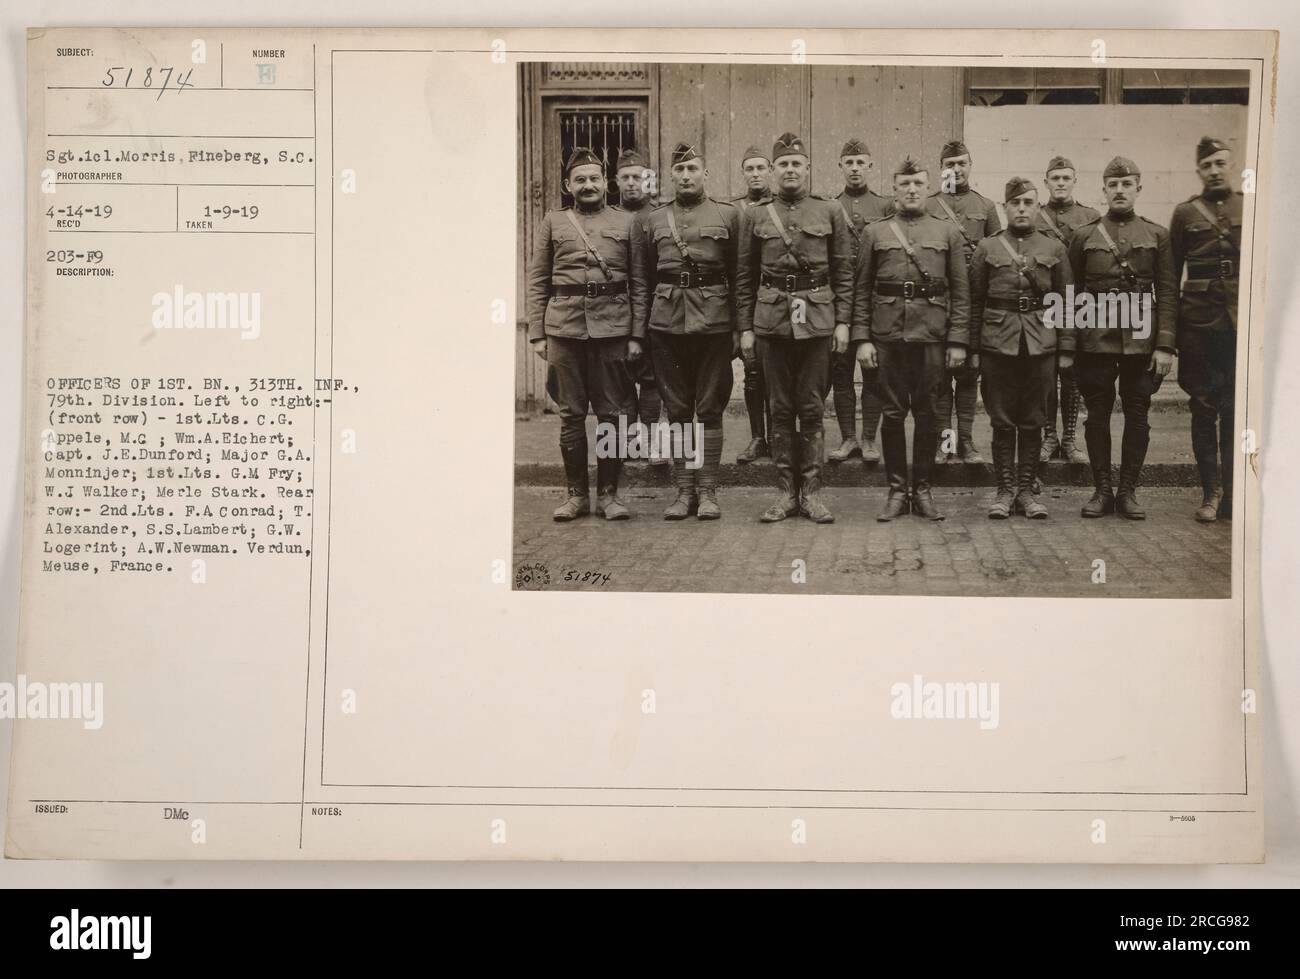 Légende : officiers du 1e Bataillon, 313e d'infanterie, 79e Division, posant pour une photo à Verdun, Meuse, France pendant la première Guerre mondiale. Les officiers de la première rangée, de gauche à droite, sont le 1st Lieutenants C.G. Appele, M.C ; Wm.A.Bichert ; Capitaine J.E. Dunford ; Major G.A. Monninjer ; 1st Lieutenants G.M. Fry ; W.J. Walker ; et Merle Stark. Dans la rangée arrière, il y a des seconds lieutenants F.A. Conrad ; T. Alexander ; S.S. Lambert ; G.W. Logerint ; et A.W. Newman. La photo a été prise le 14 avril 1919 et émise le 9 janvier 1919. Photographe : inconnu (Notes DMC : 51874 6 80 B TO B ANMA). Banque D'Images